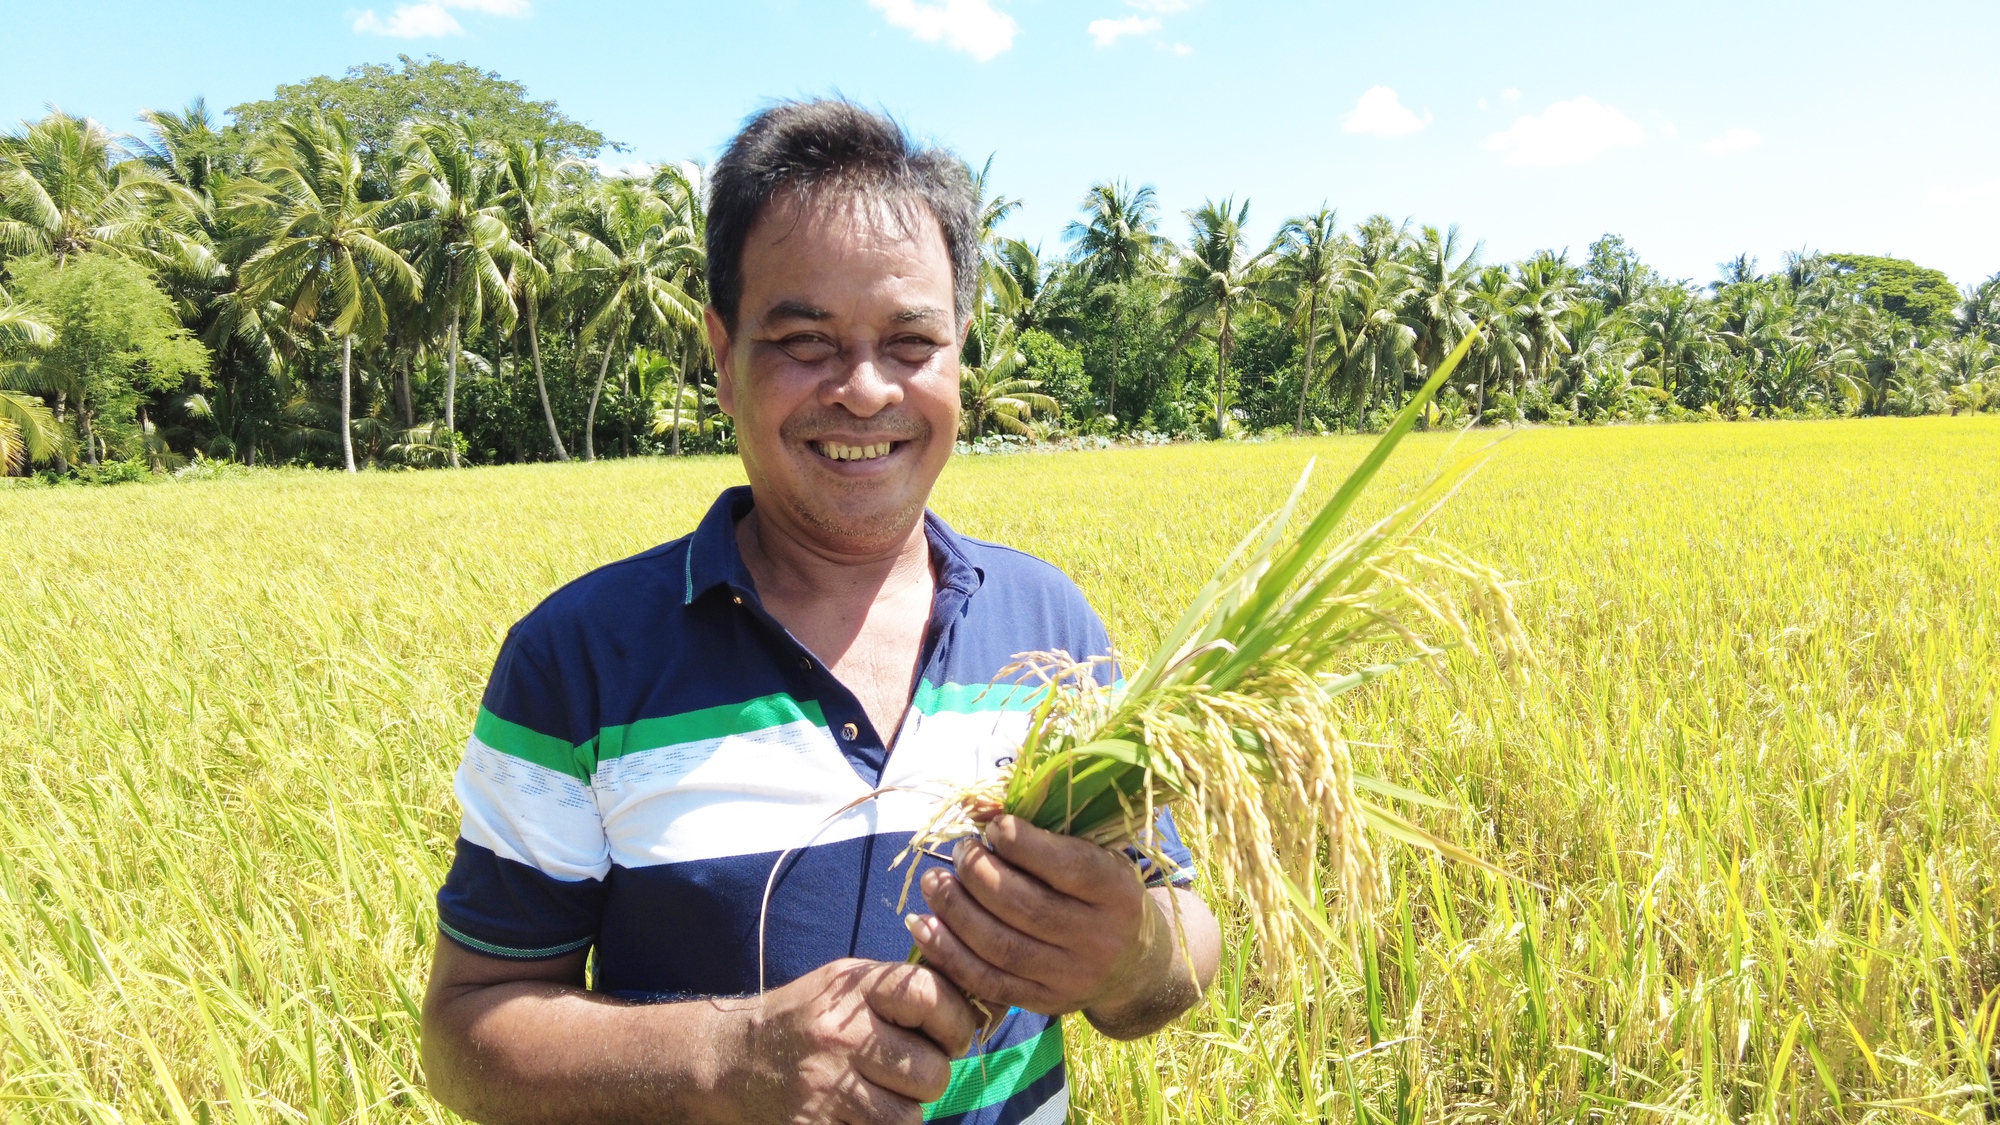 Cách để có đến 6 ha lúa và sắm 10 máy gặt đập liên hợp ở Trà Vinh của Nông dân xuất sắc 2023  - Ảnh 1.